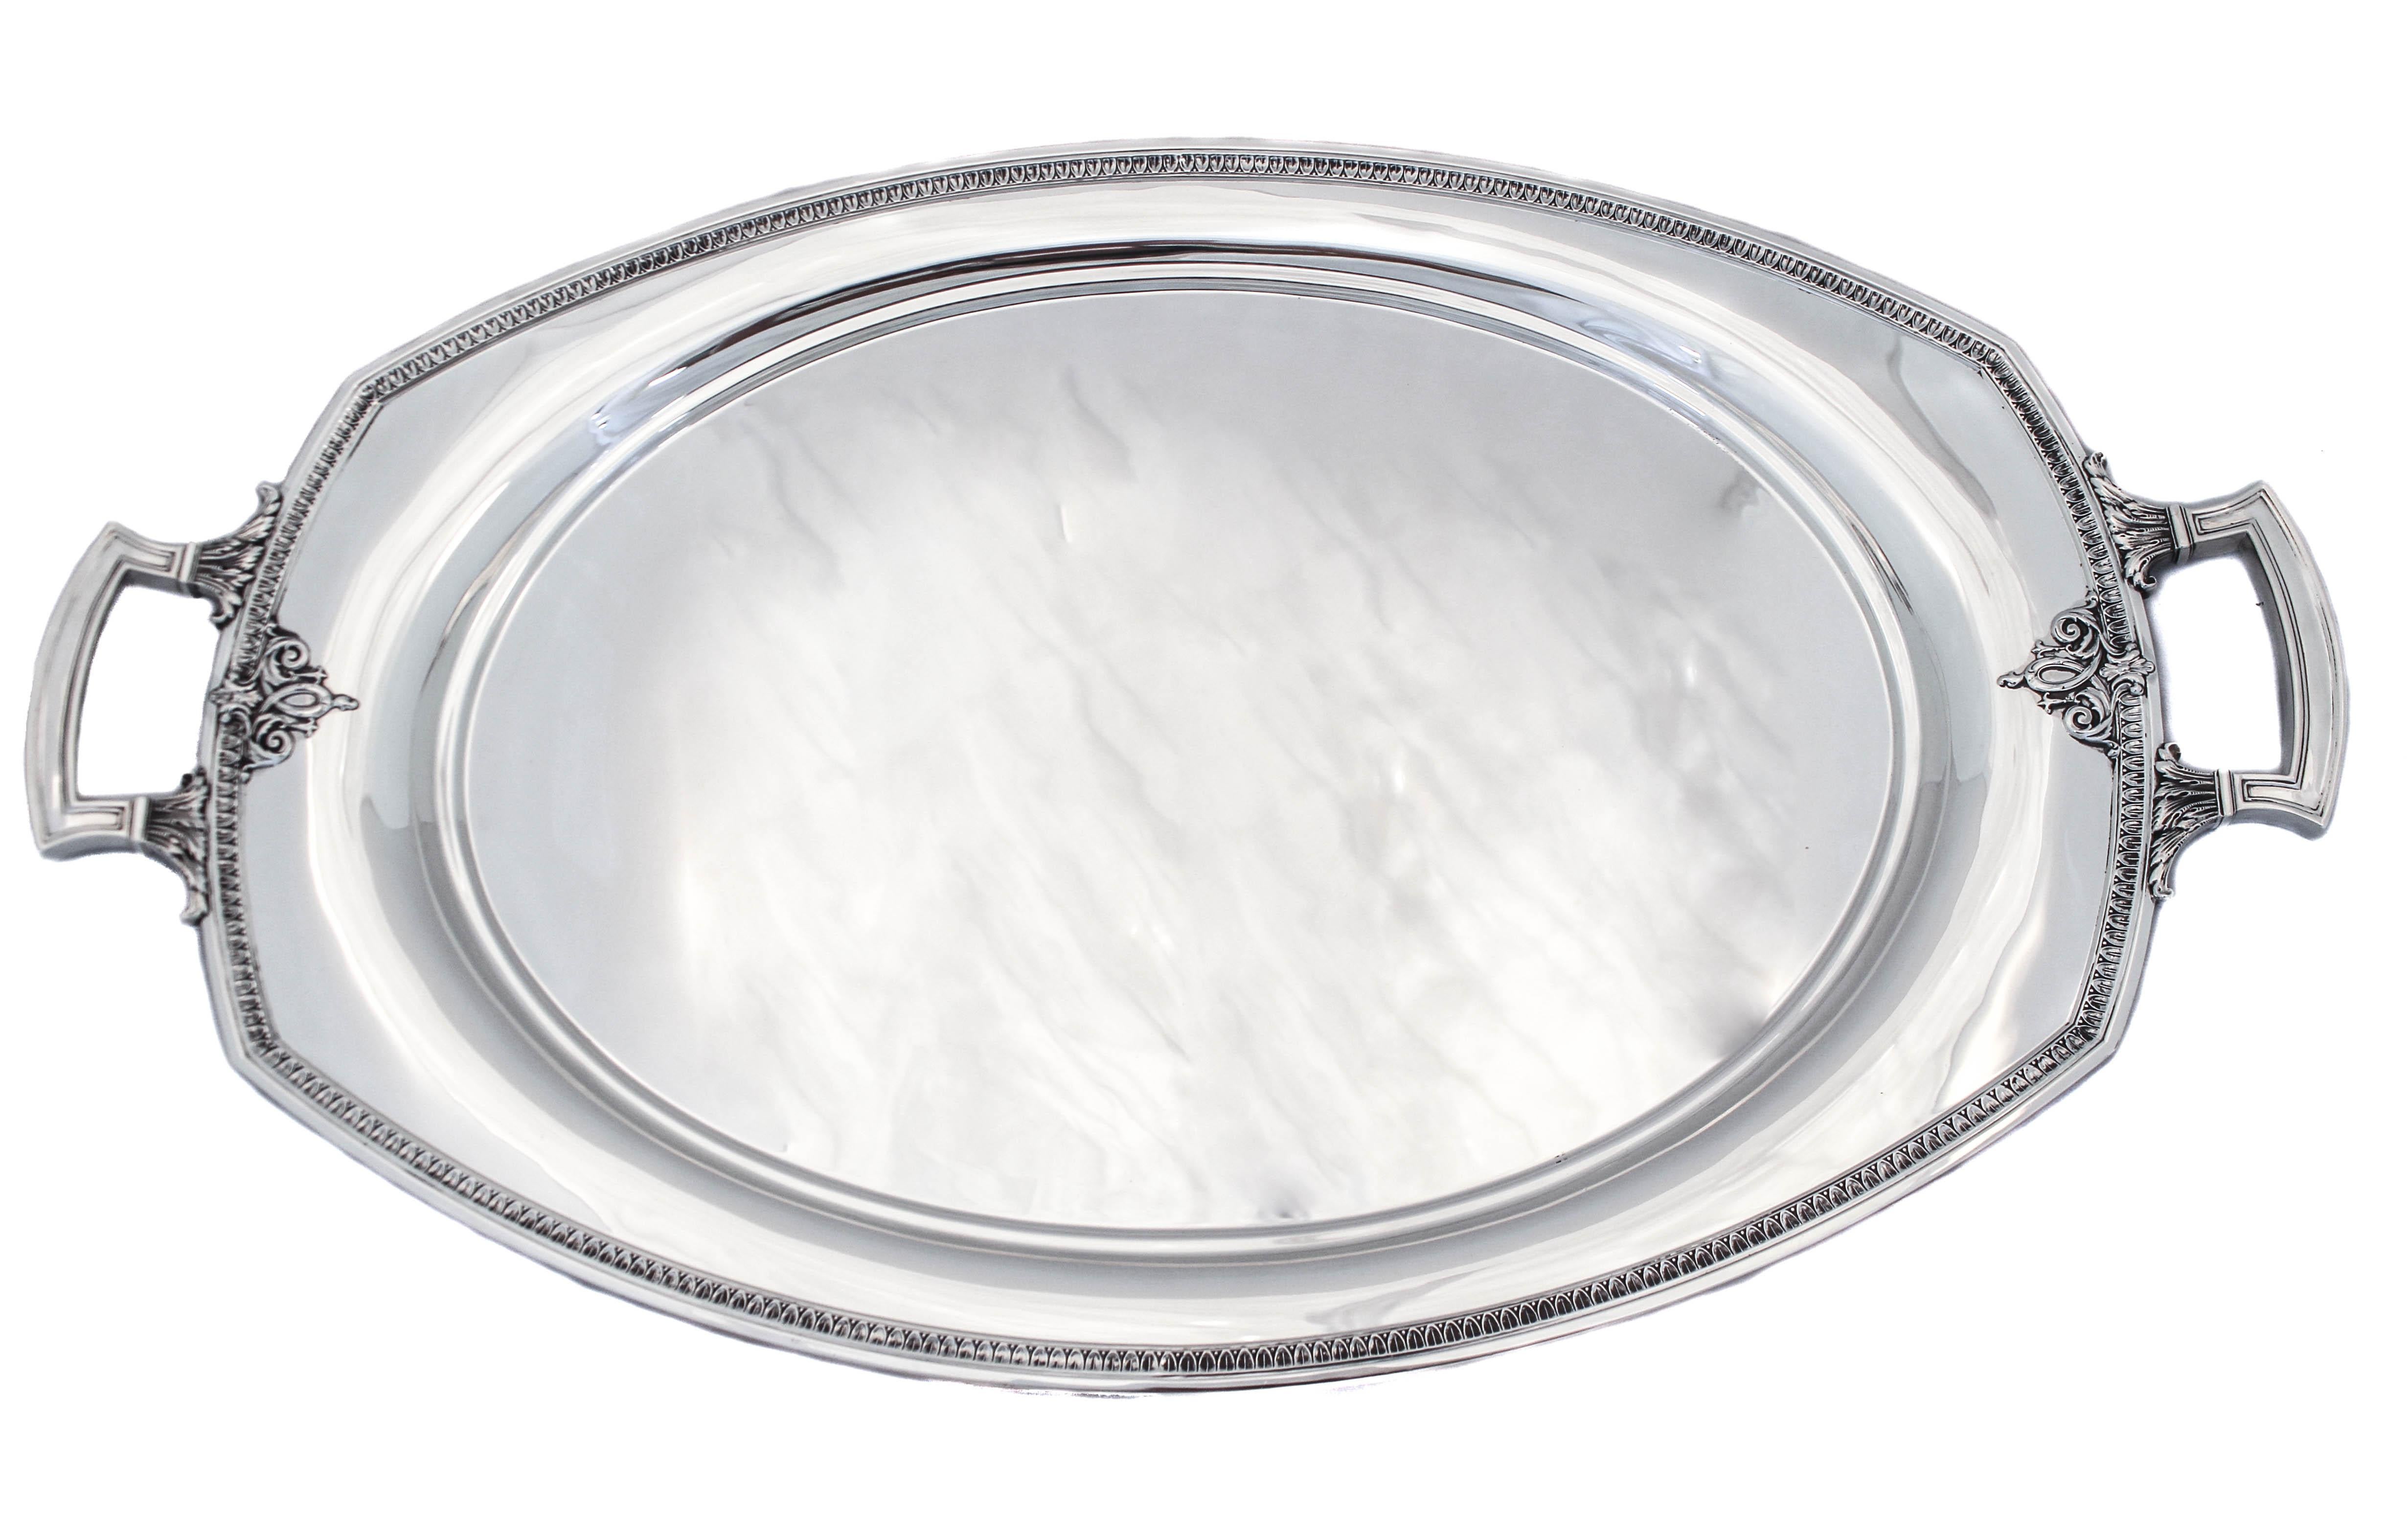 Wir sind hocherfreut, dieses Art-Deco-Teeservice der International Silver Company mit dem Muster 